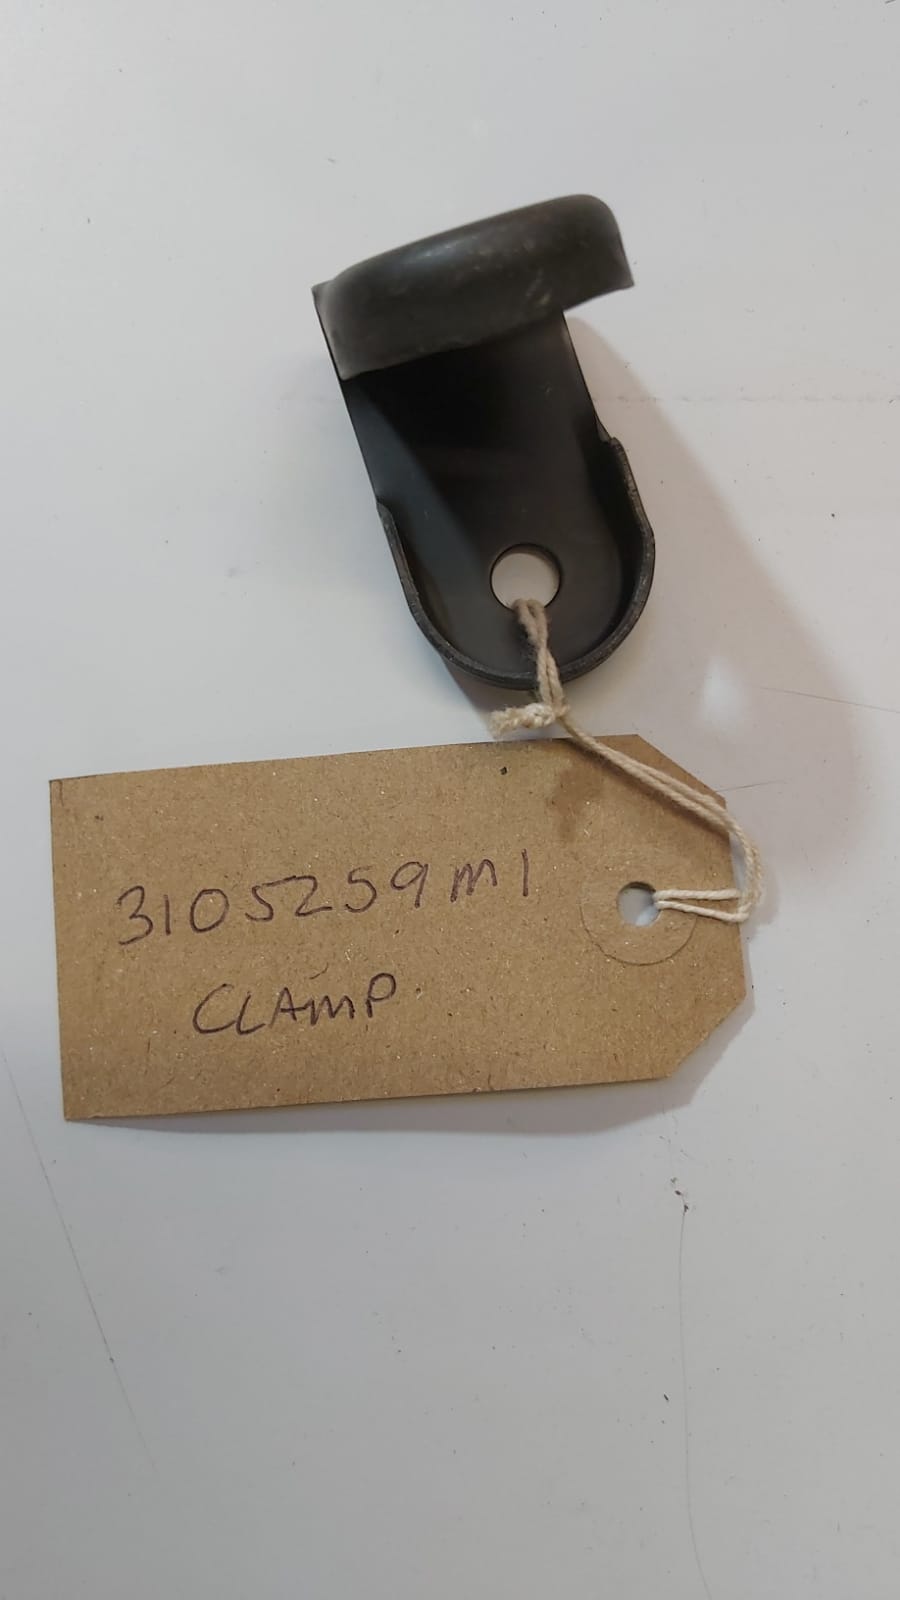 clamp-3105259m1